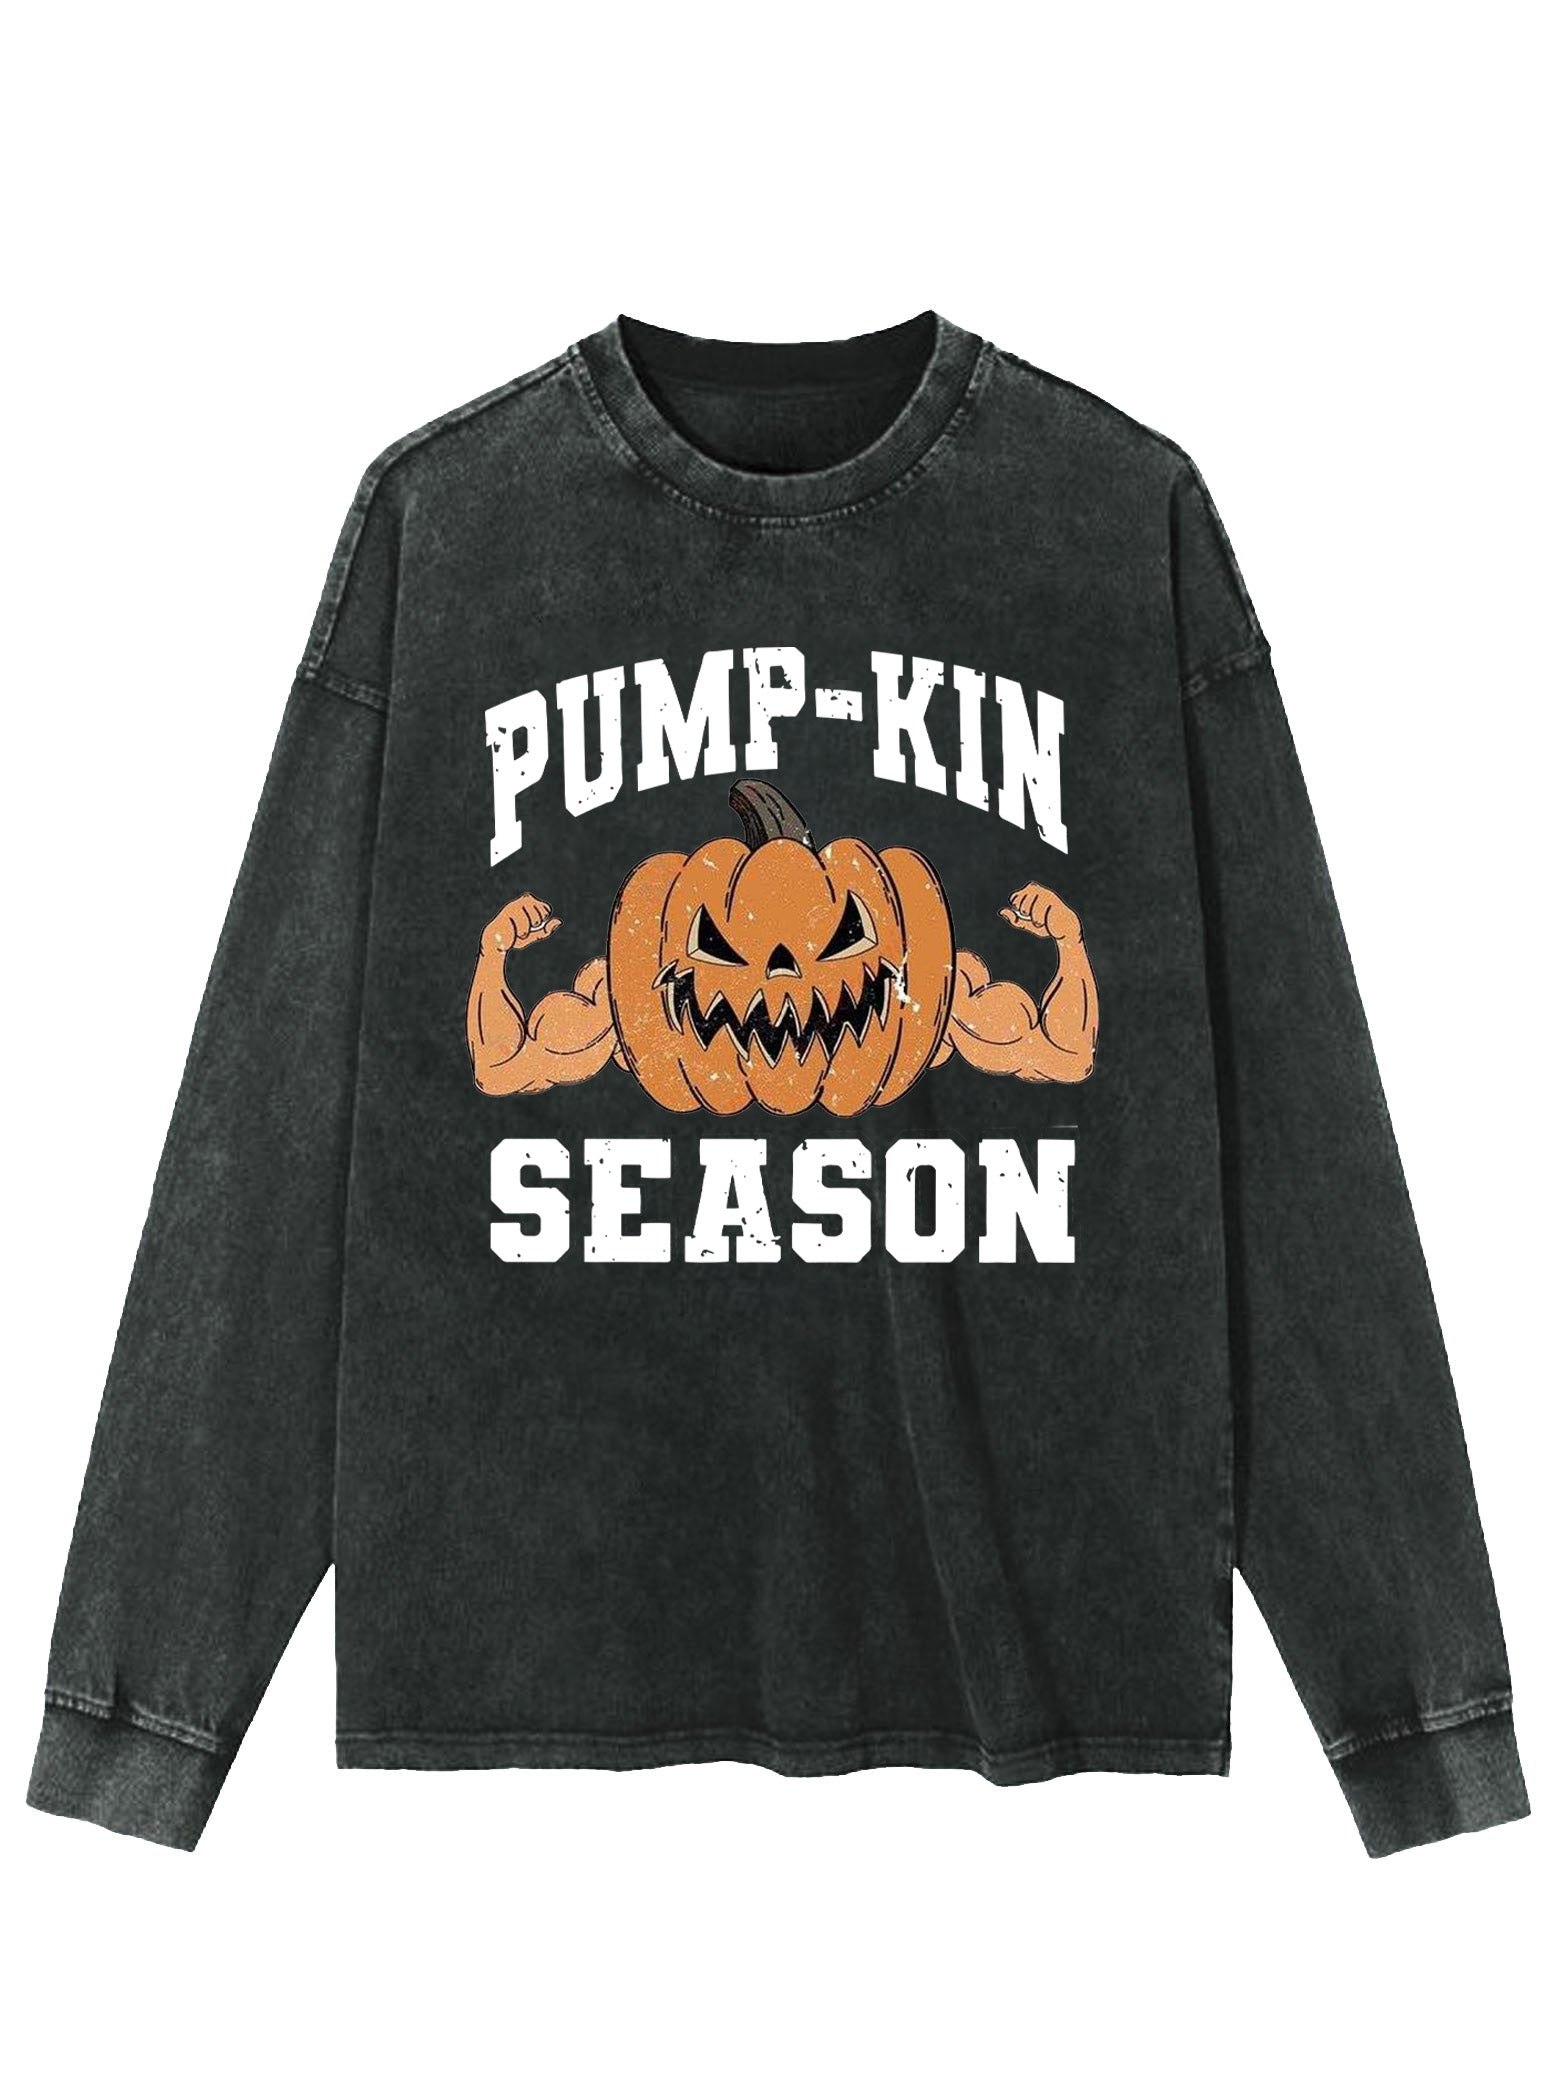 Pump-Kin Washed Sweatshirt